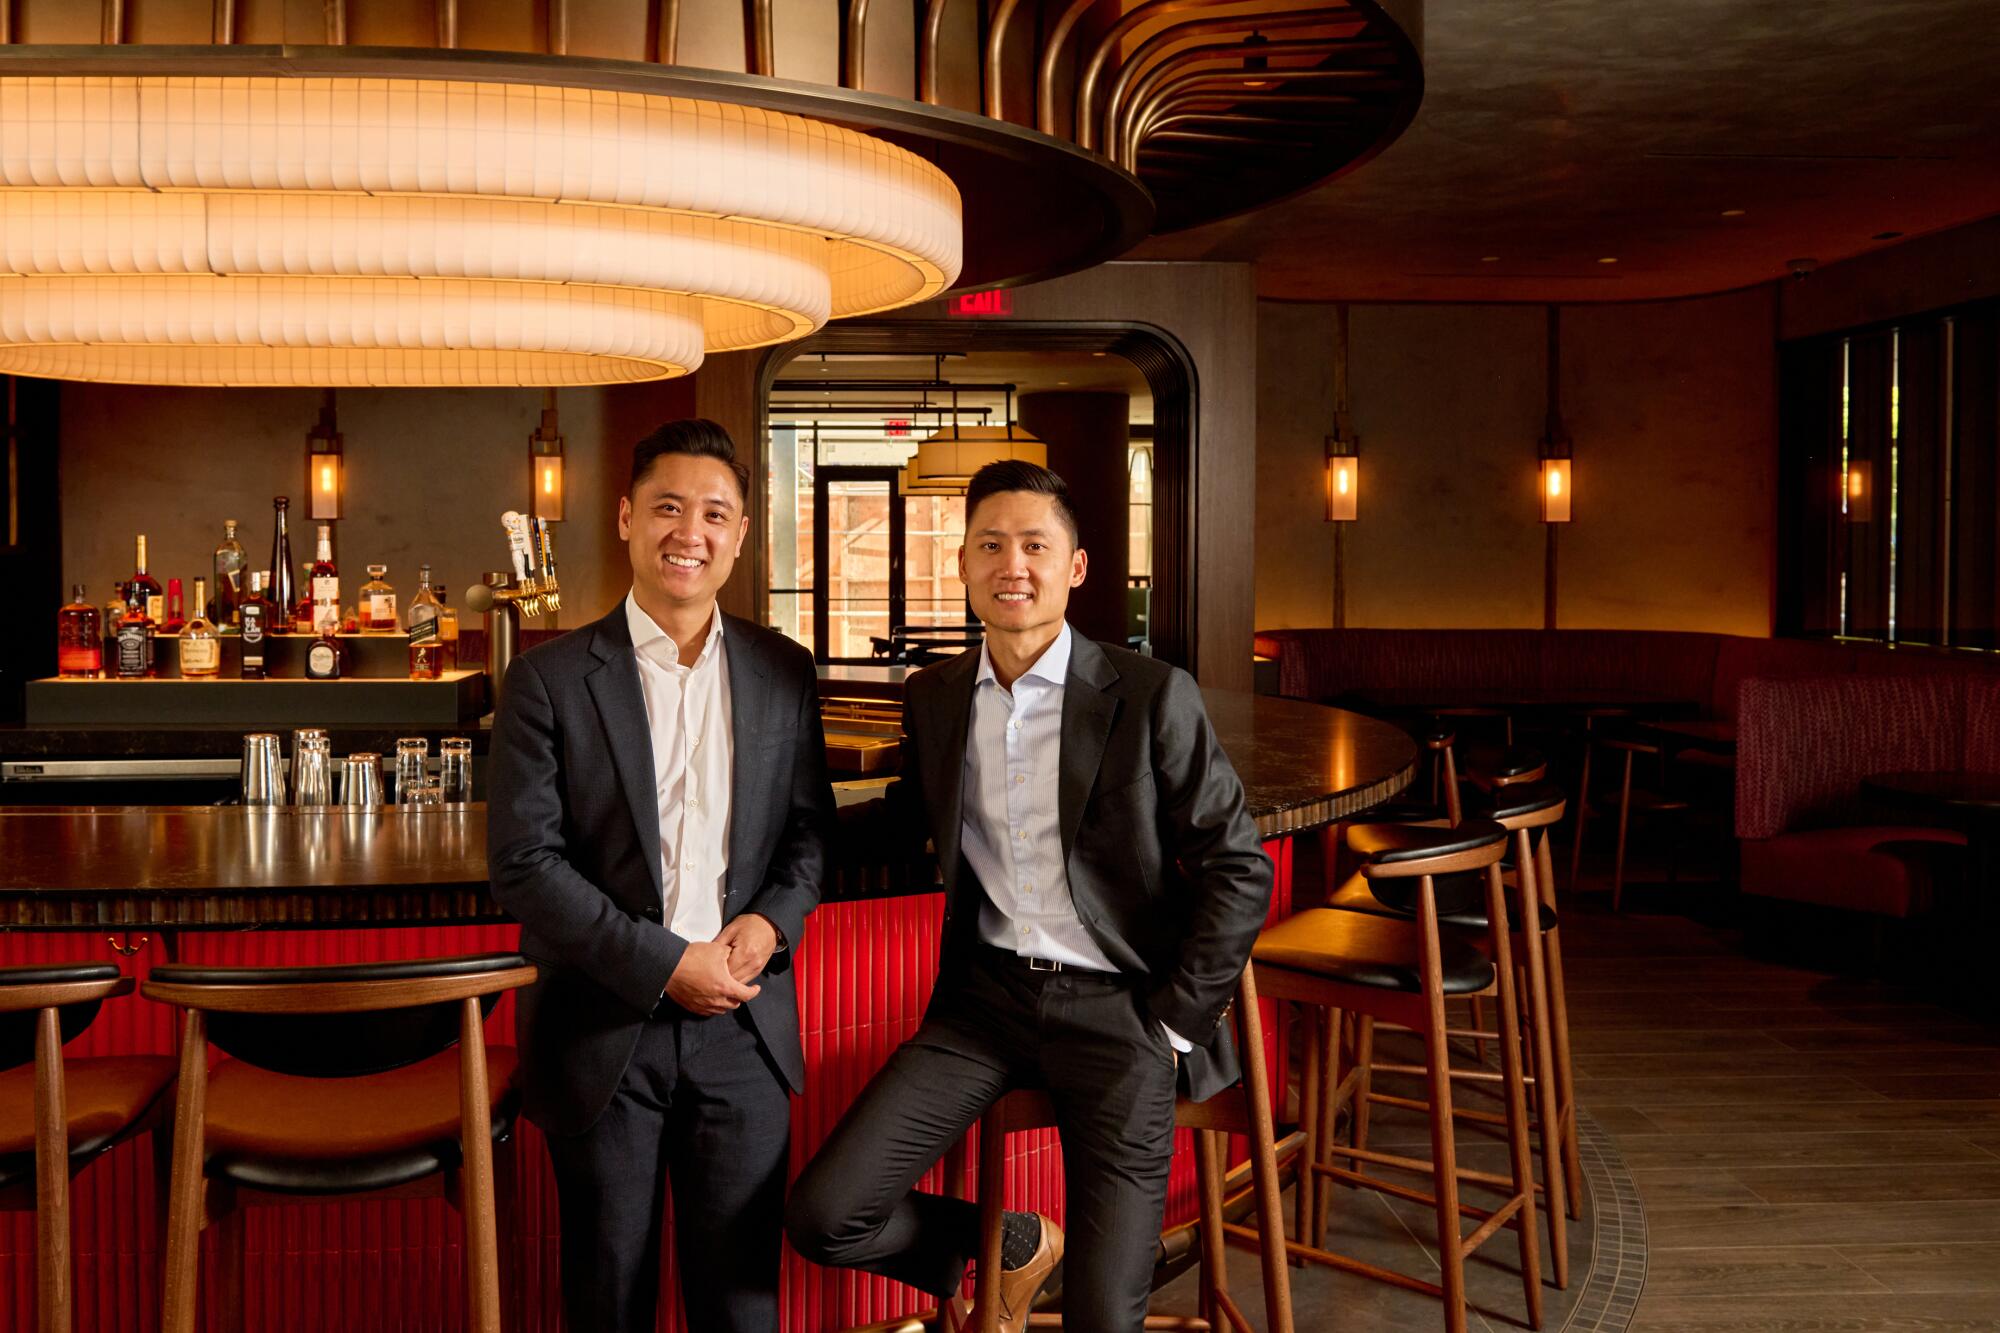 Brothers Aaron and Albert Yang at the Din Tai Fung bar.